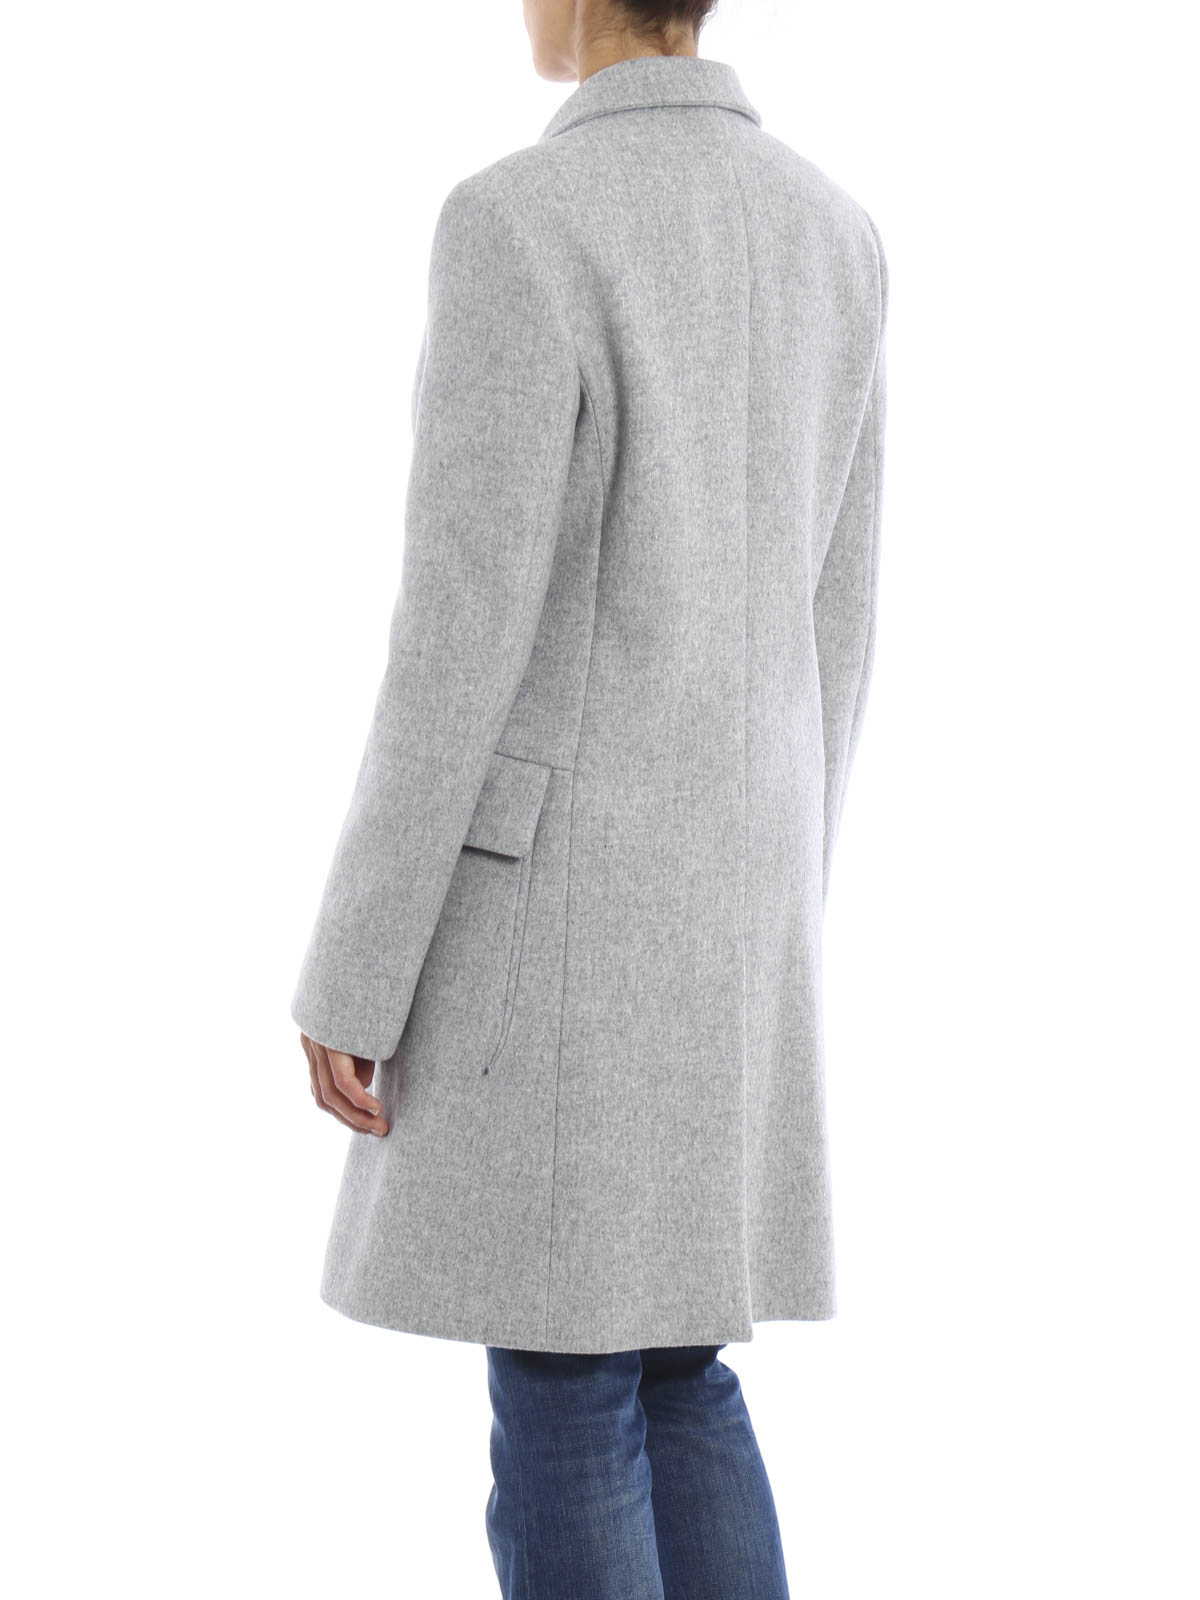 manteau gris clair femme